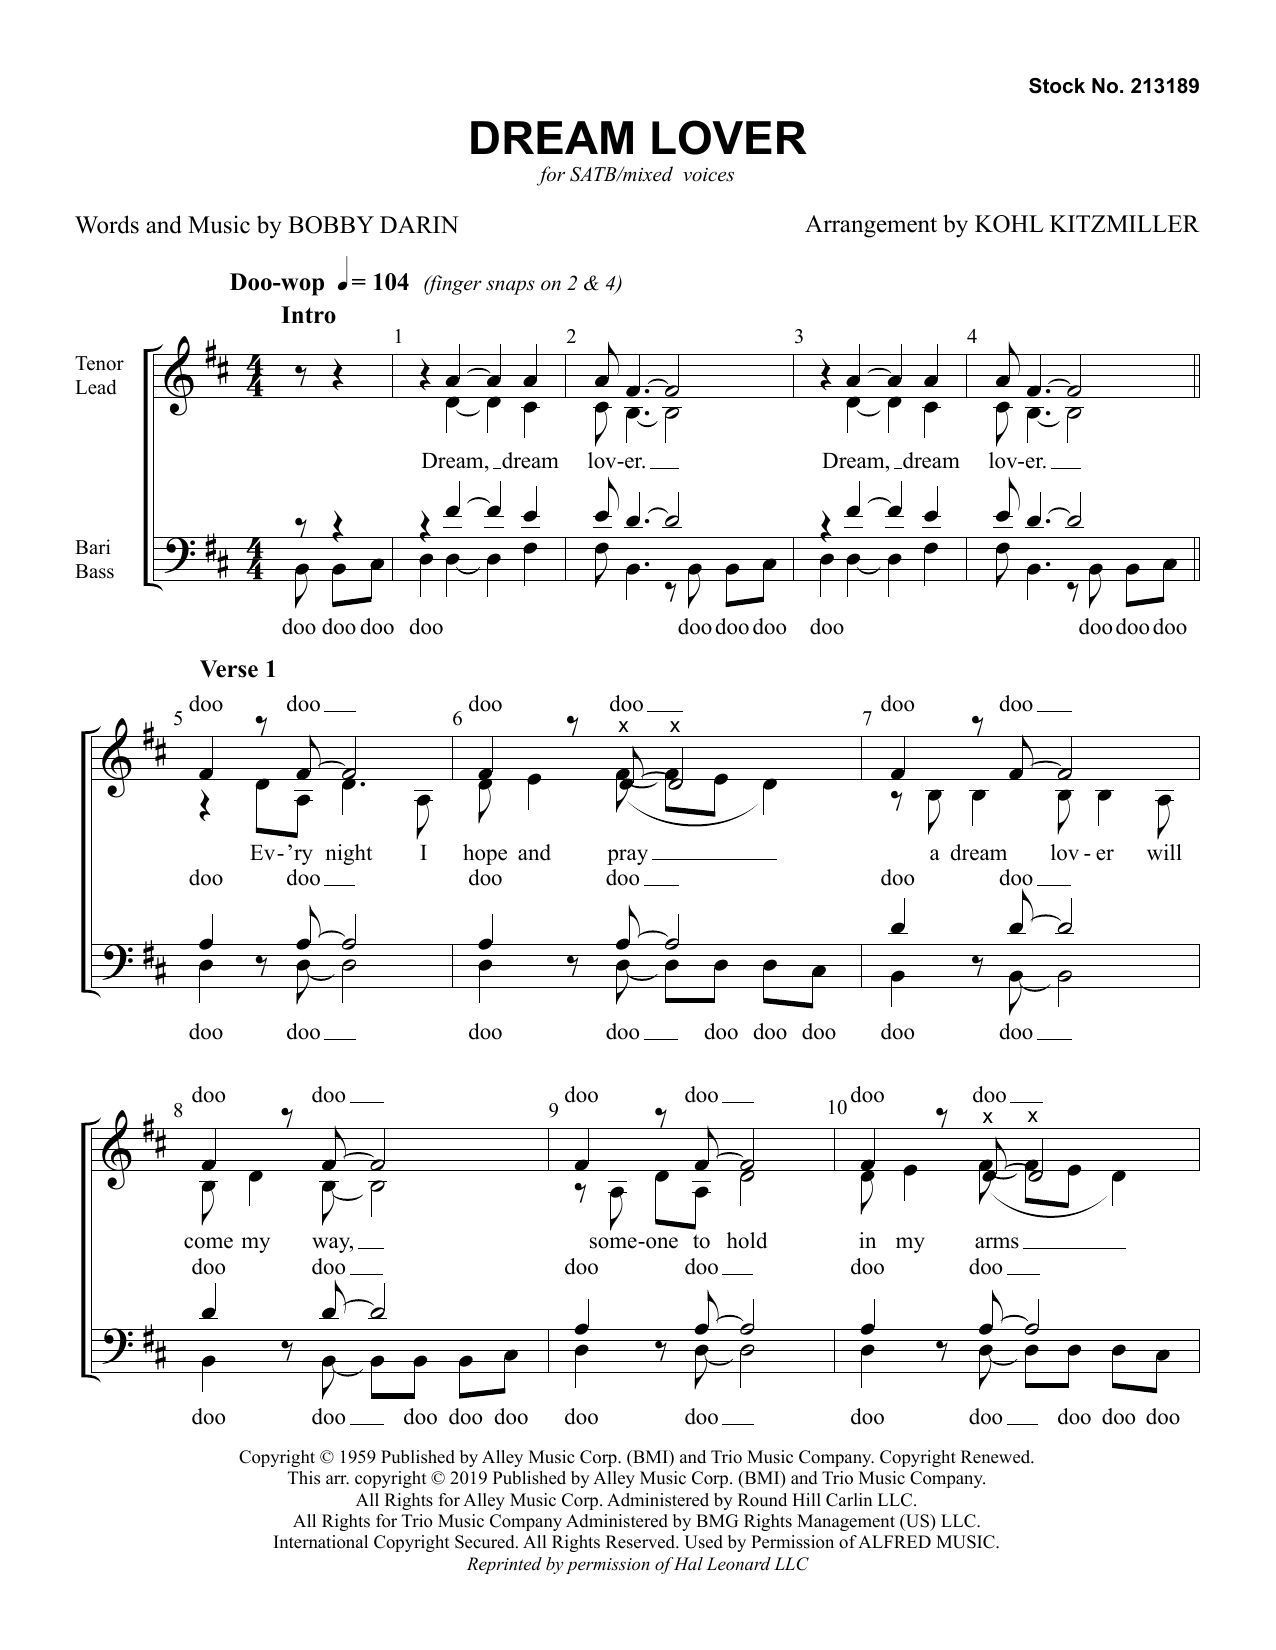 The Manhattan Transfer Dream Lover (arr. Kohl Kitzmiller) Sheet Music Notes & Chords for TTBB Choir - Download or Print PDF